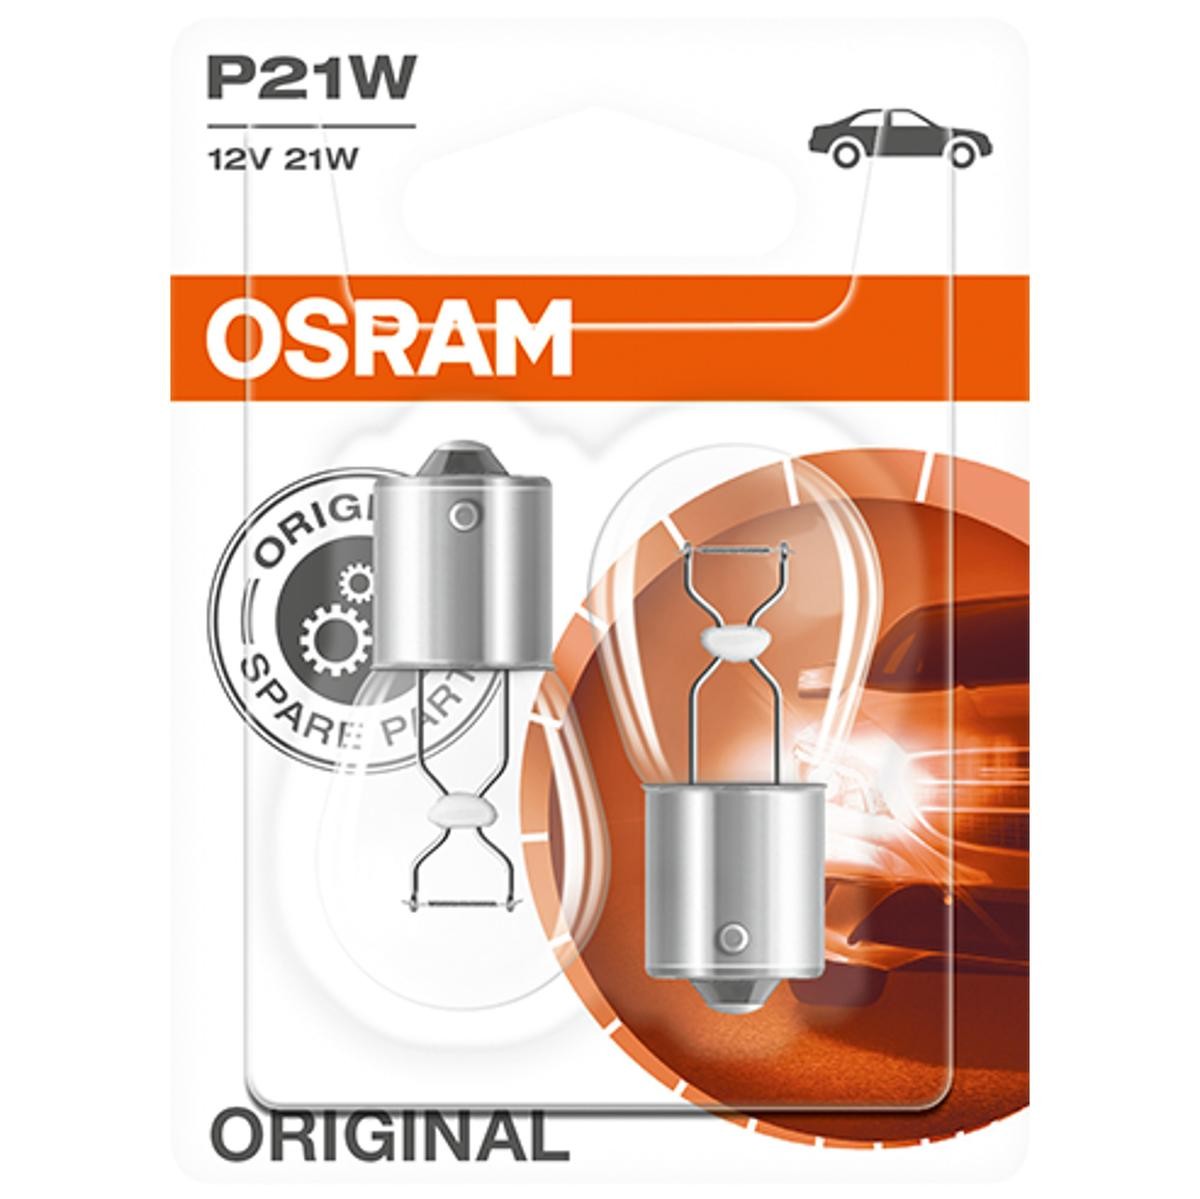 7506-02B OSRAM ORIGINAL LINE P21W Blinkerbirne 12V 21W, P21W P21W